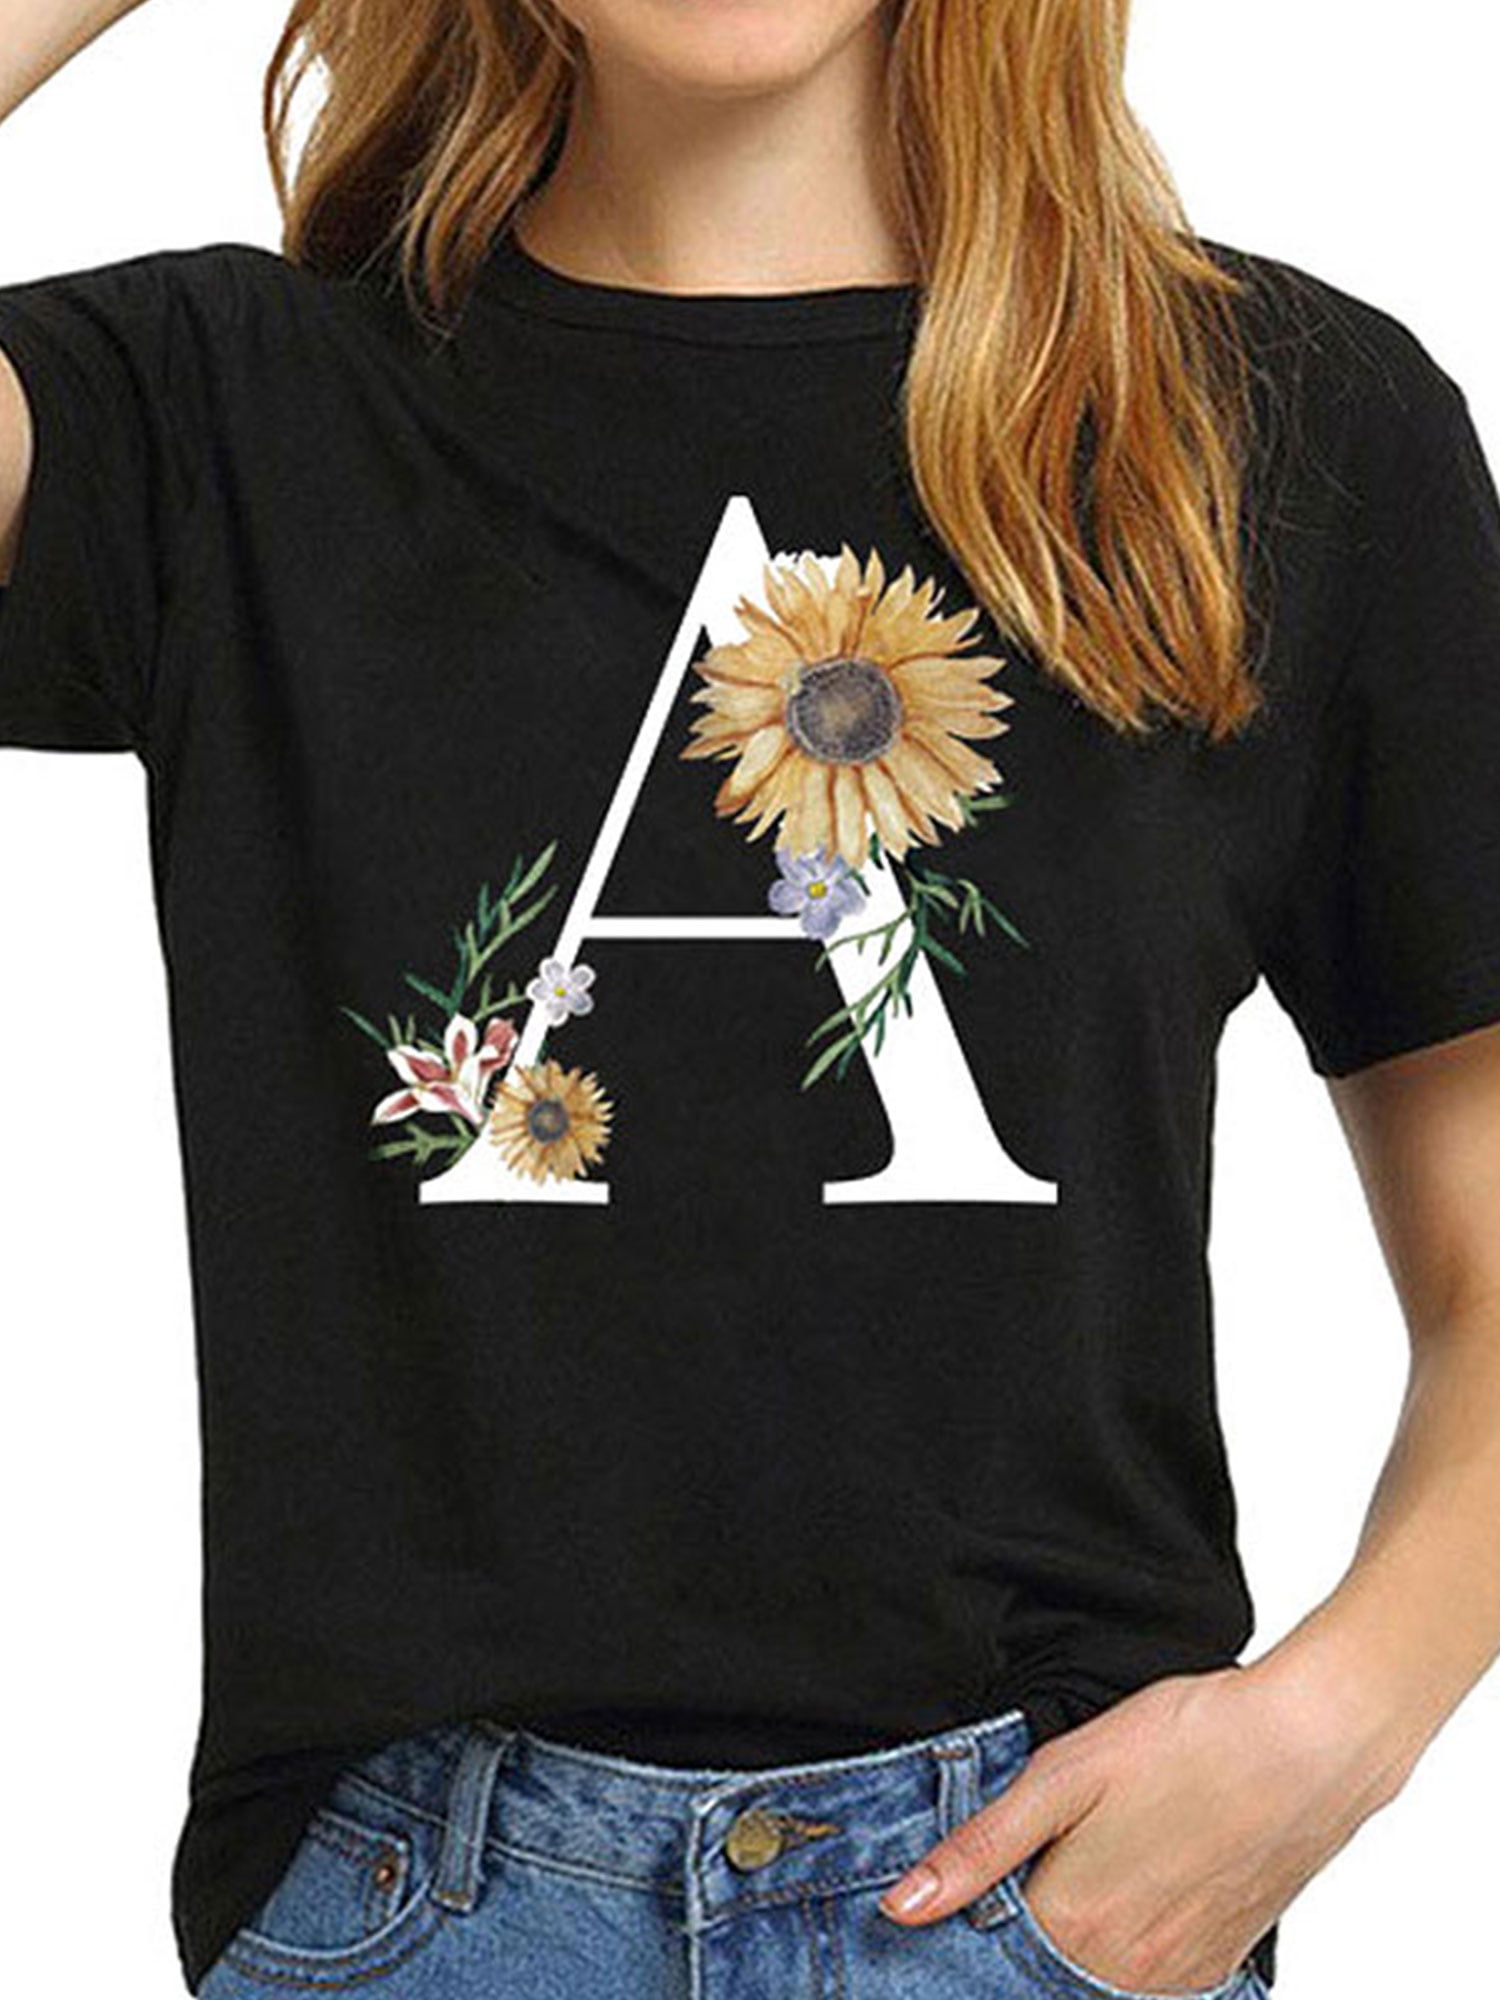 Floral Tshirt Plus Size Photography Tshirt Plus Size Floral Tshirt Photography Tshirt Wildflower Tshirt Camera Tshirt